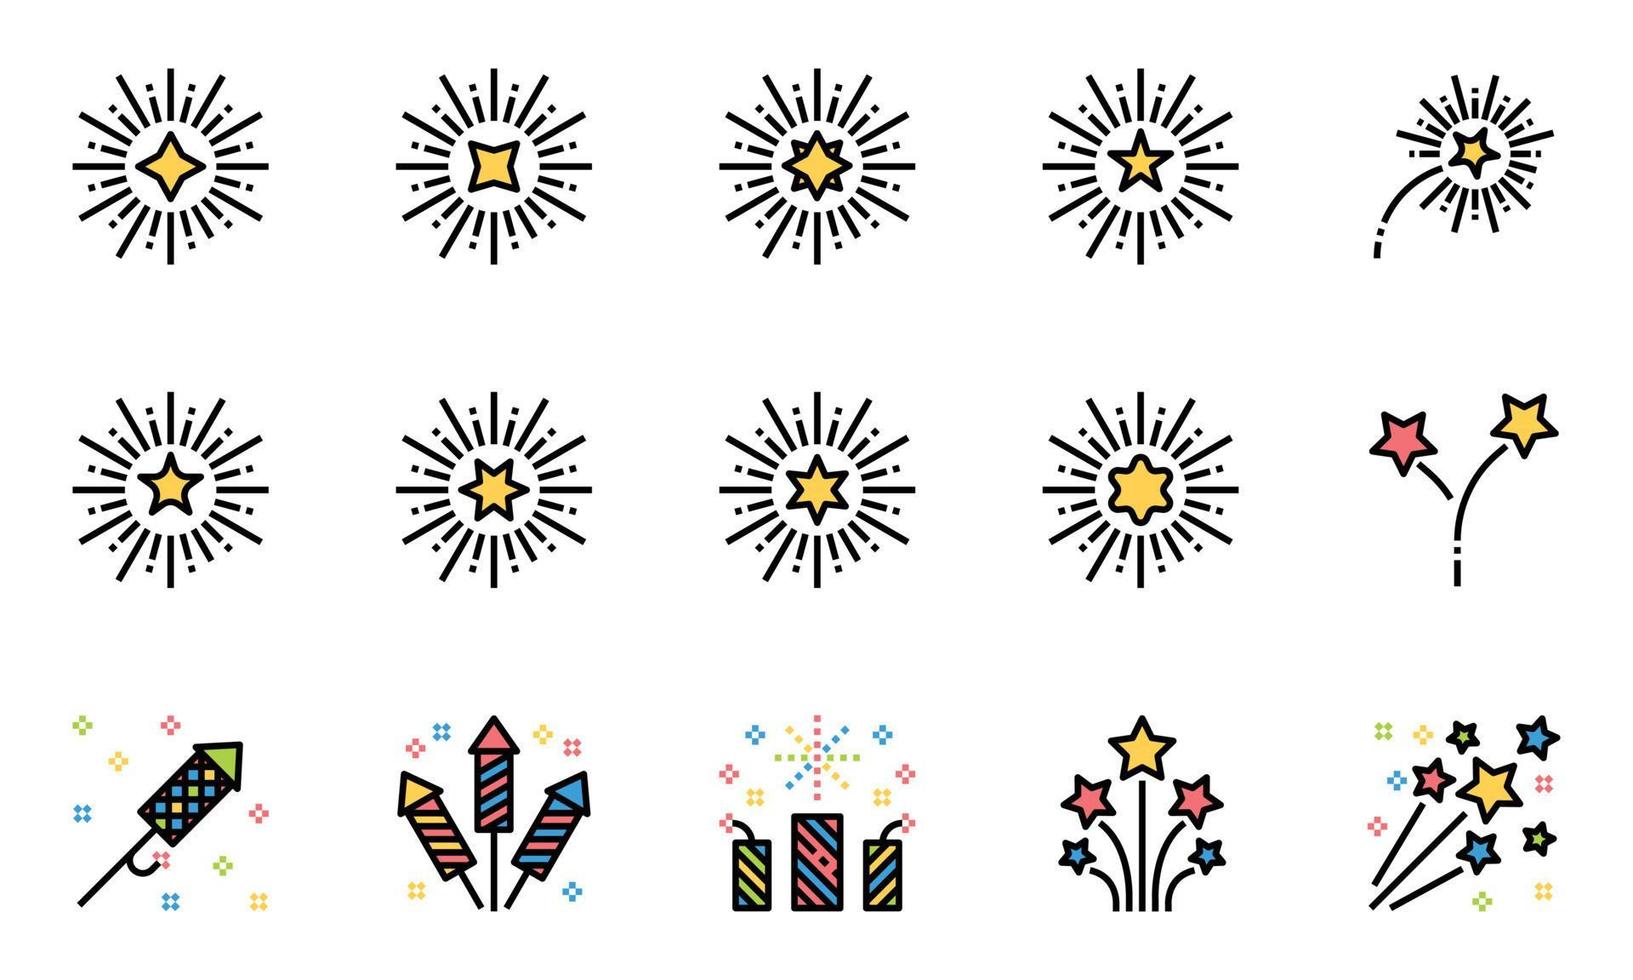 linea di fuochi d'artificio icone a colori illustrazione vettoriale , celebrazione, scintillio, festa, capodanno